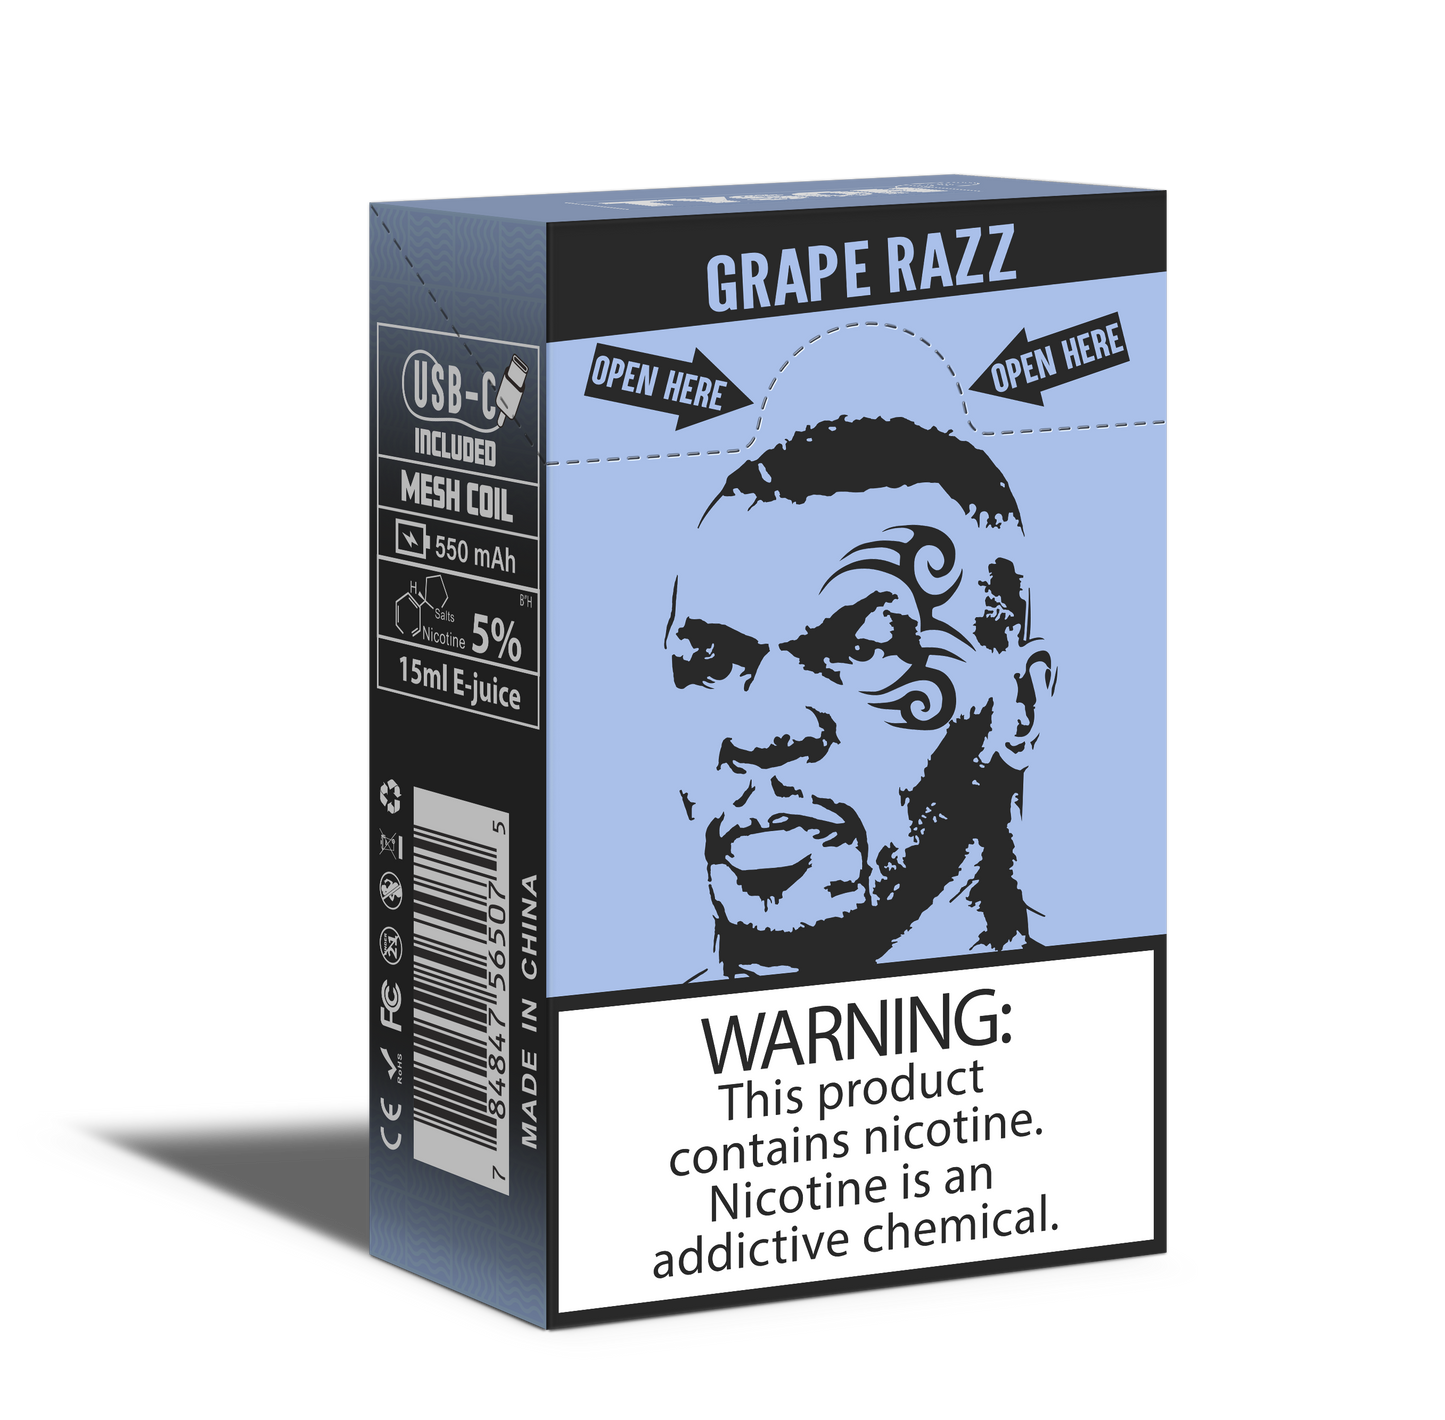 Tyson 2.0 Heavyweight 7000 Puffs Disposable Vape - Grape Razz